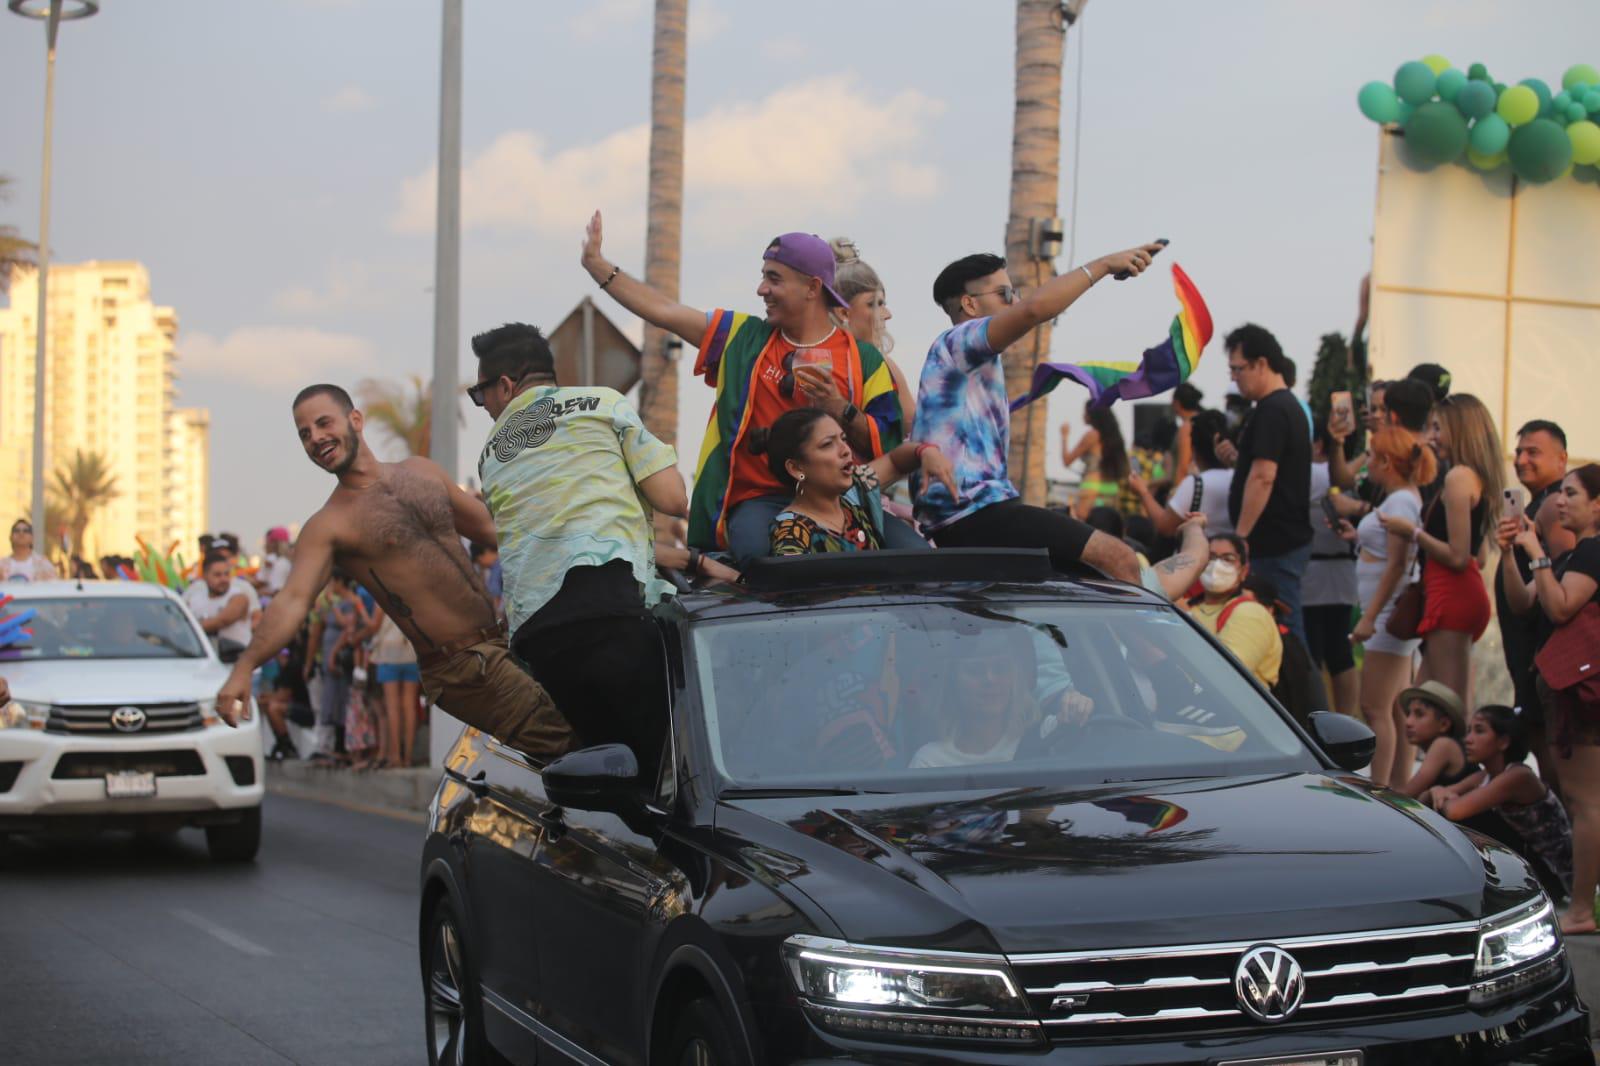 $!En Mazatlán el malecón se vuelve un abanico multicolor con marcha de la diversidad sexual; coronan a Ninel Conde como su Reina